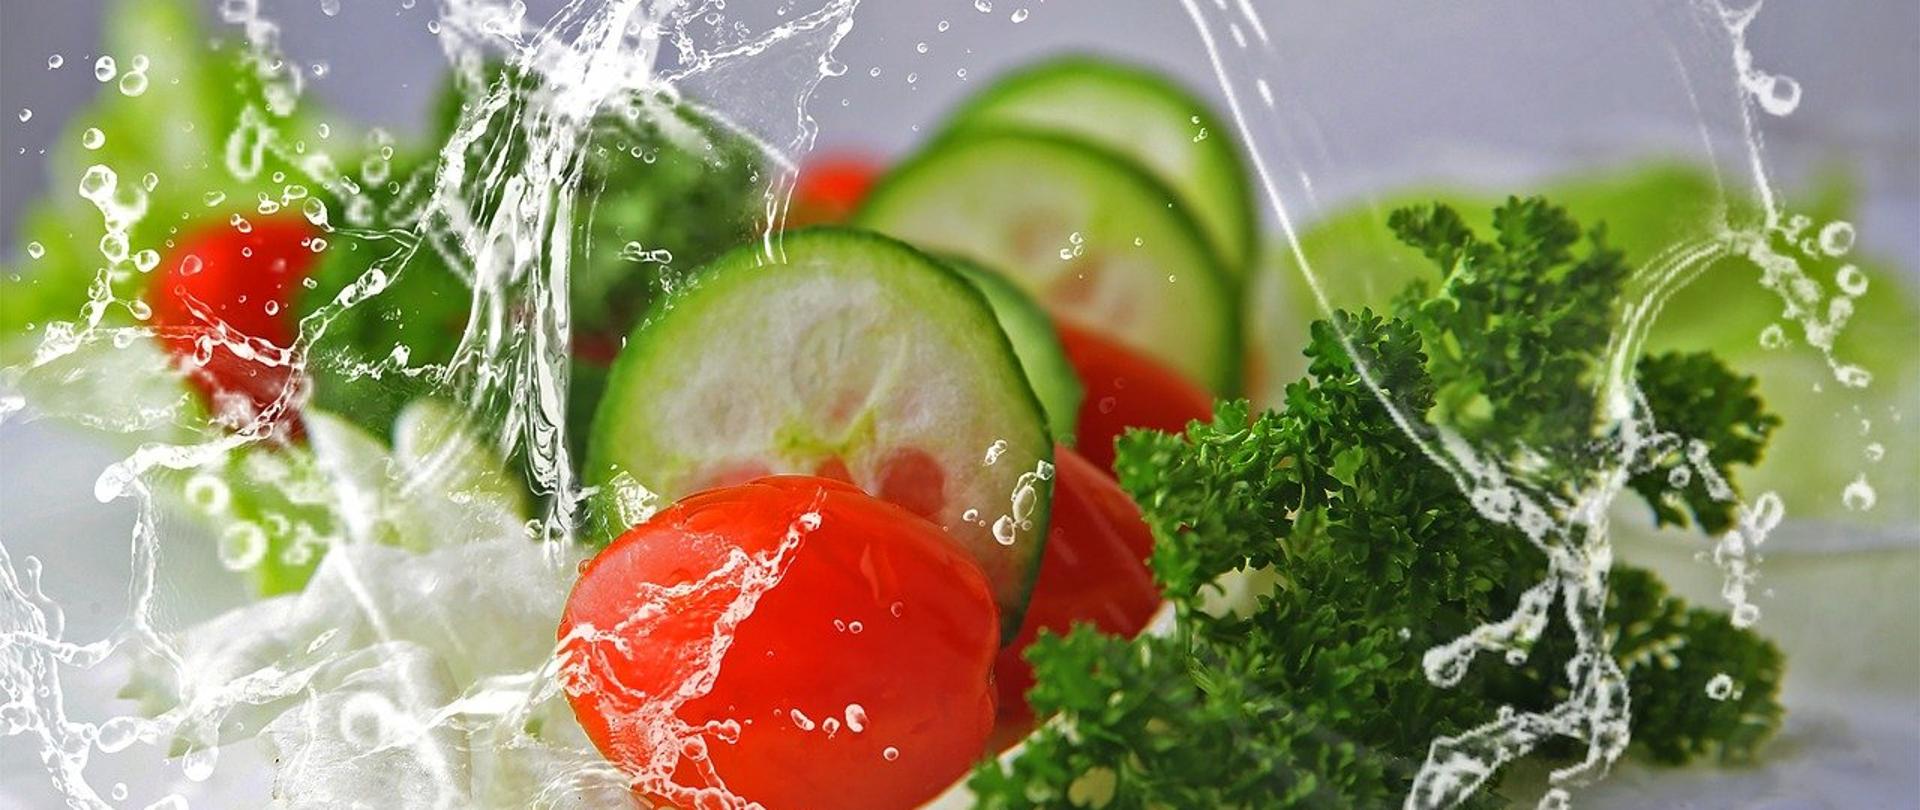 Zdjęcie przedstawia świeże warzywa i owoce